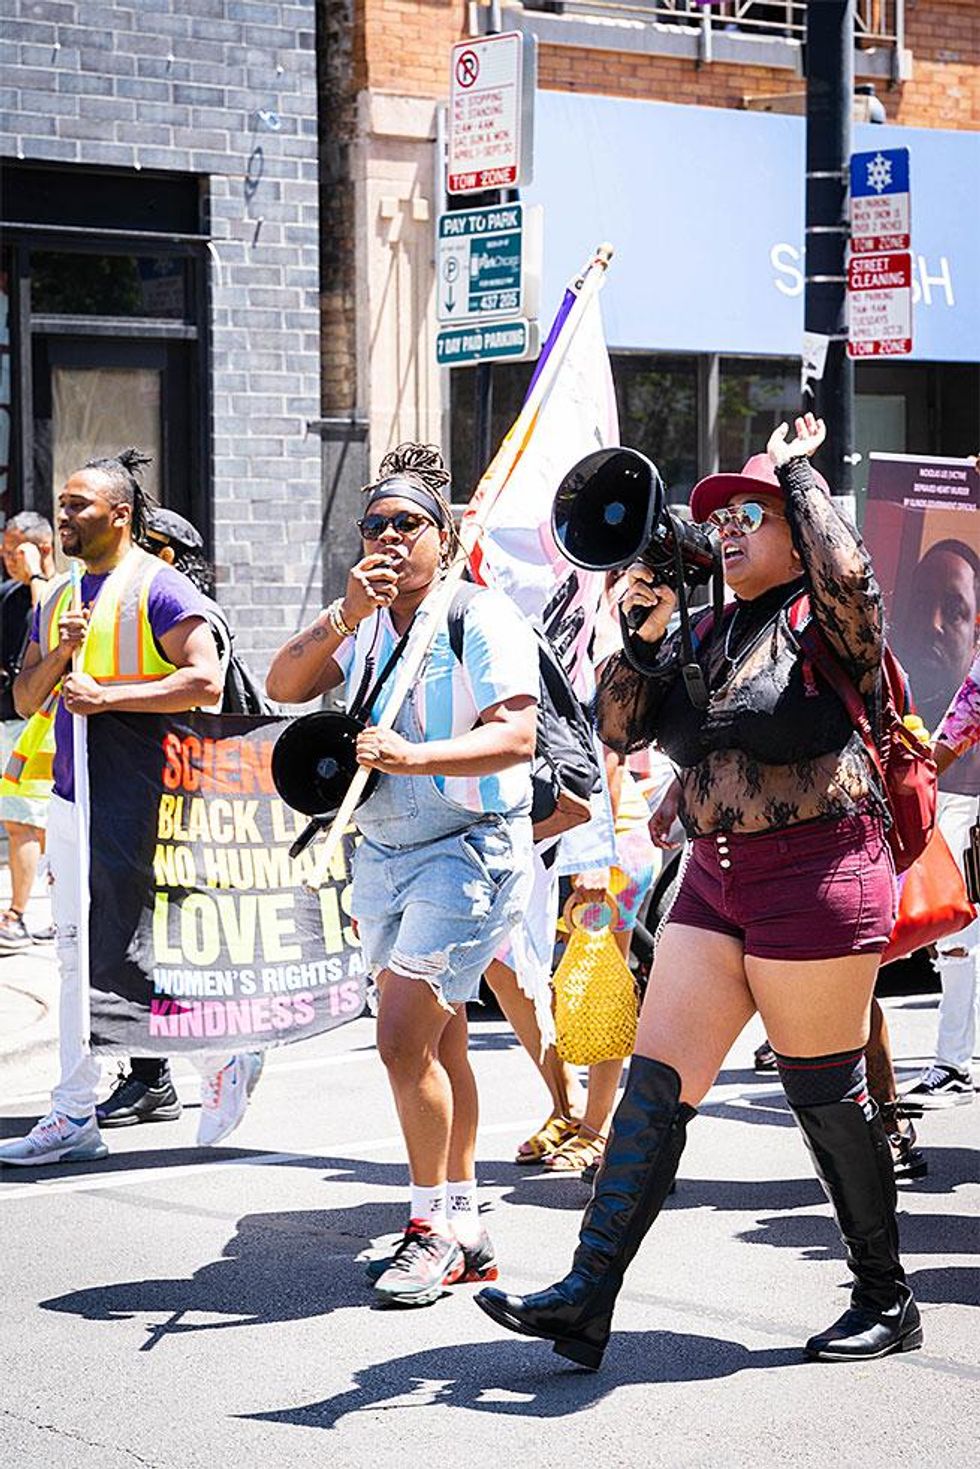 Drag March For Change Supports Black Lives Matter